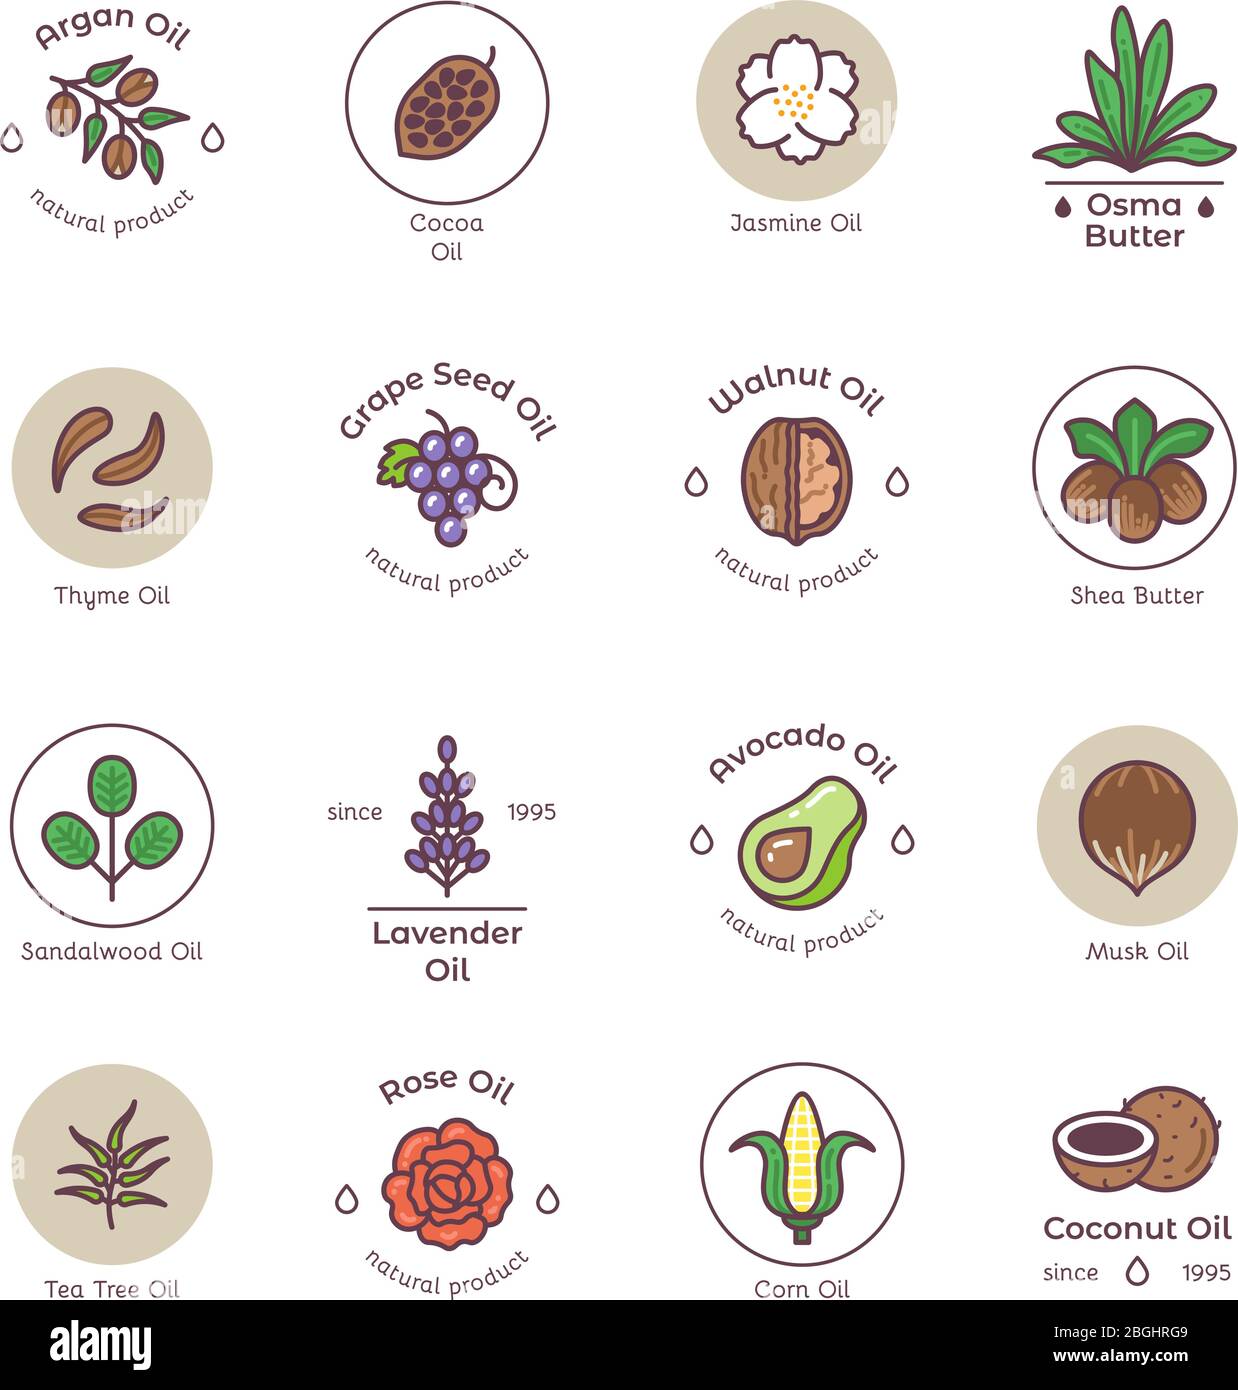 Skincare e bellezza linea di prodotti cosmetici biologici Oil Vector emblemi e loghi. Illustrazione dell'albero del tè dell'olio naturale, dell'olio di cocco e dell'avocado Illustrazione Vettoriale